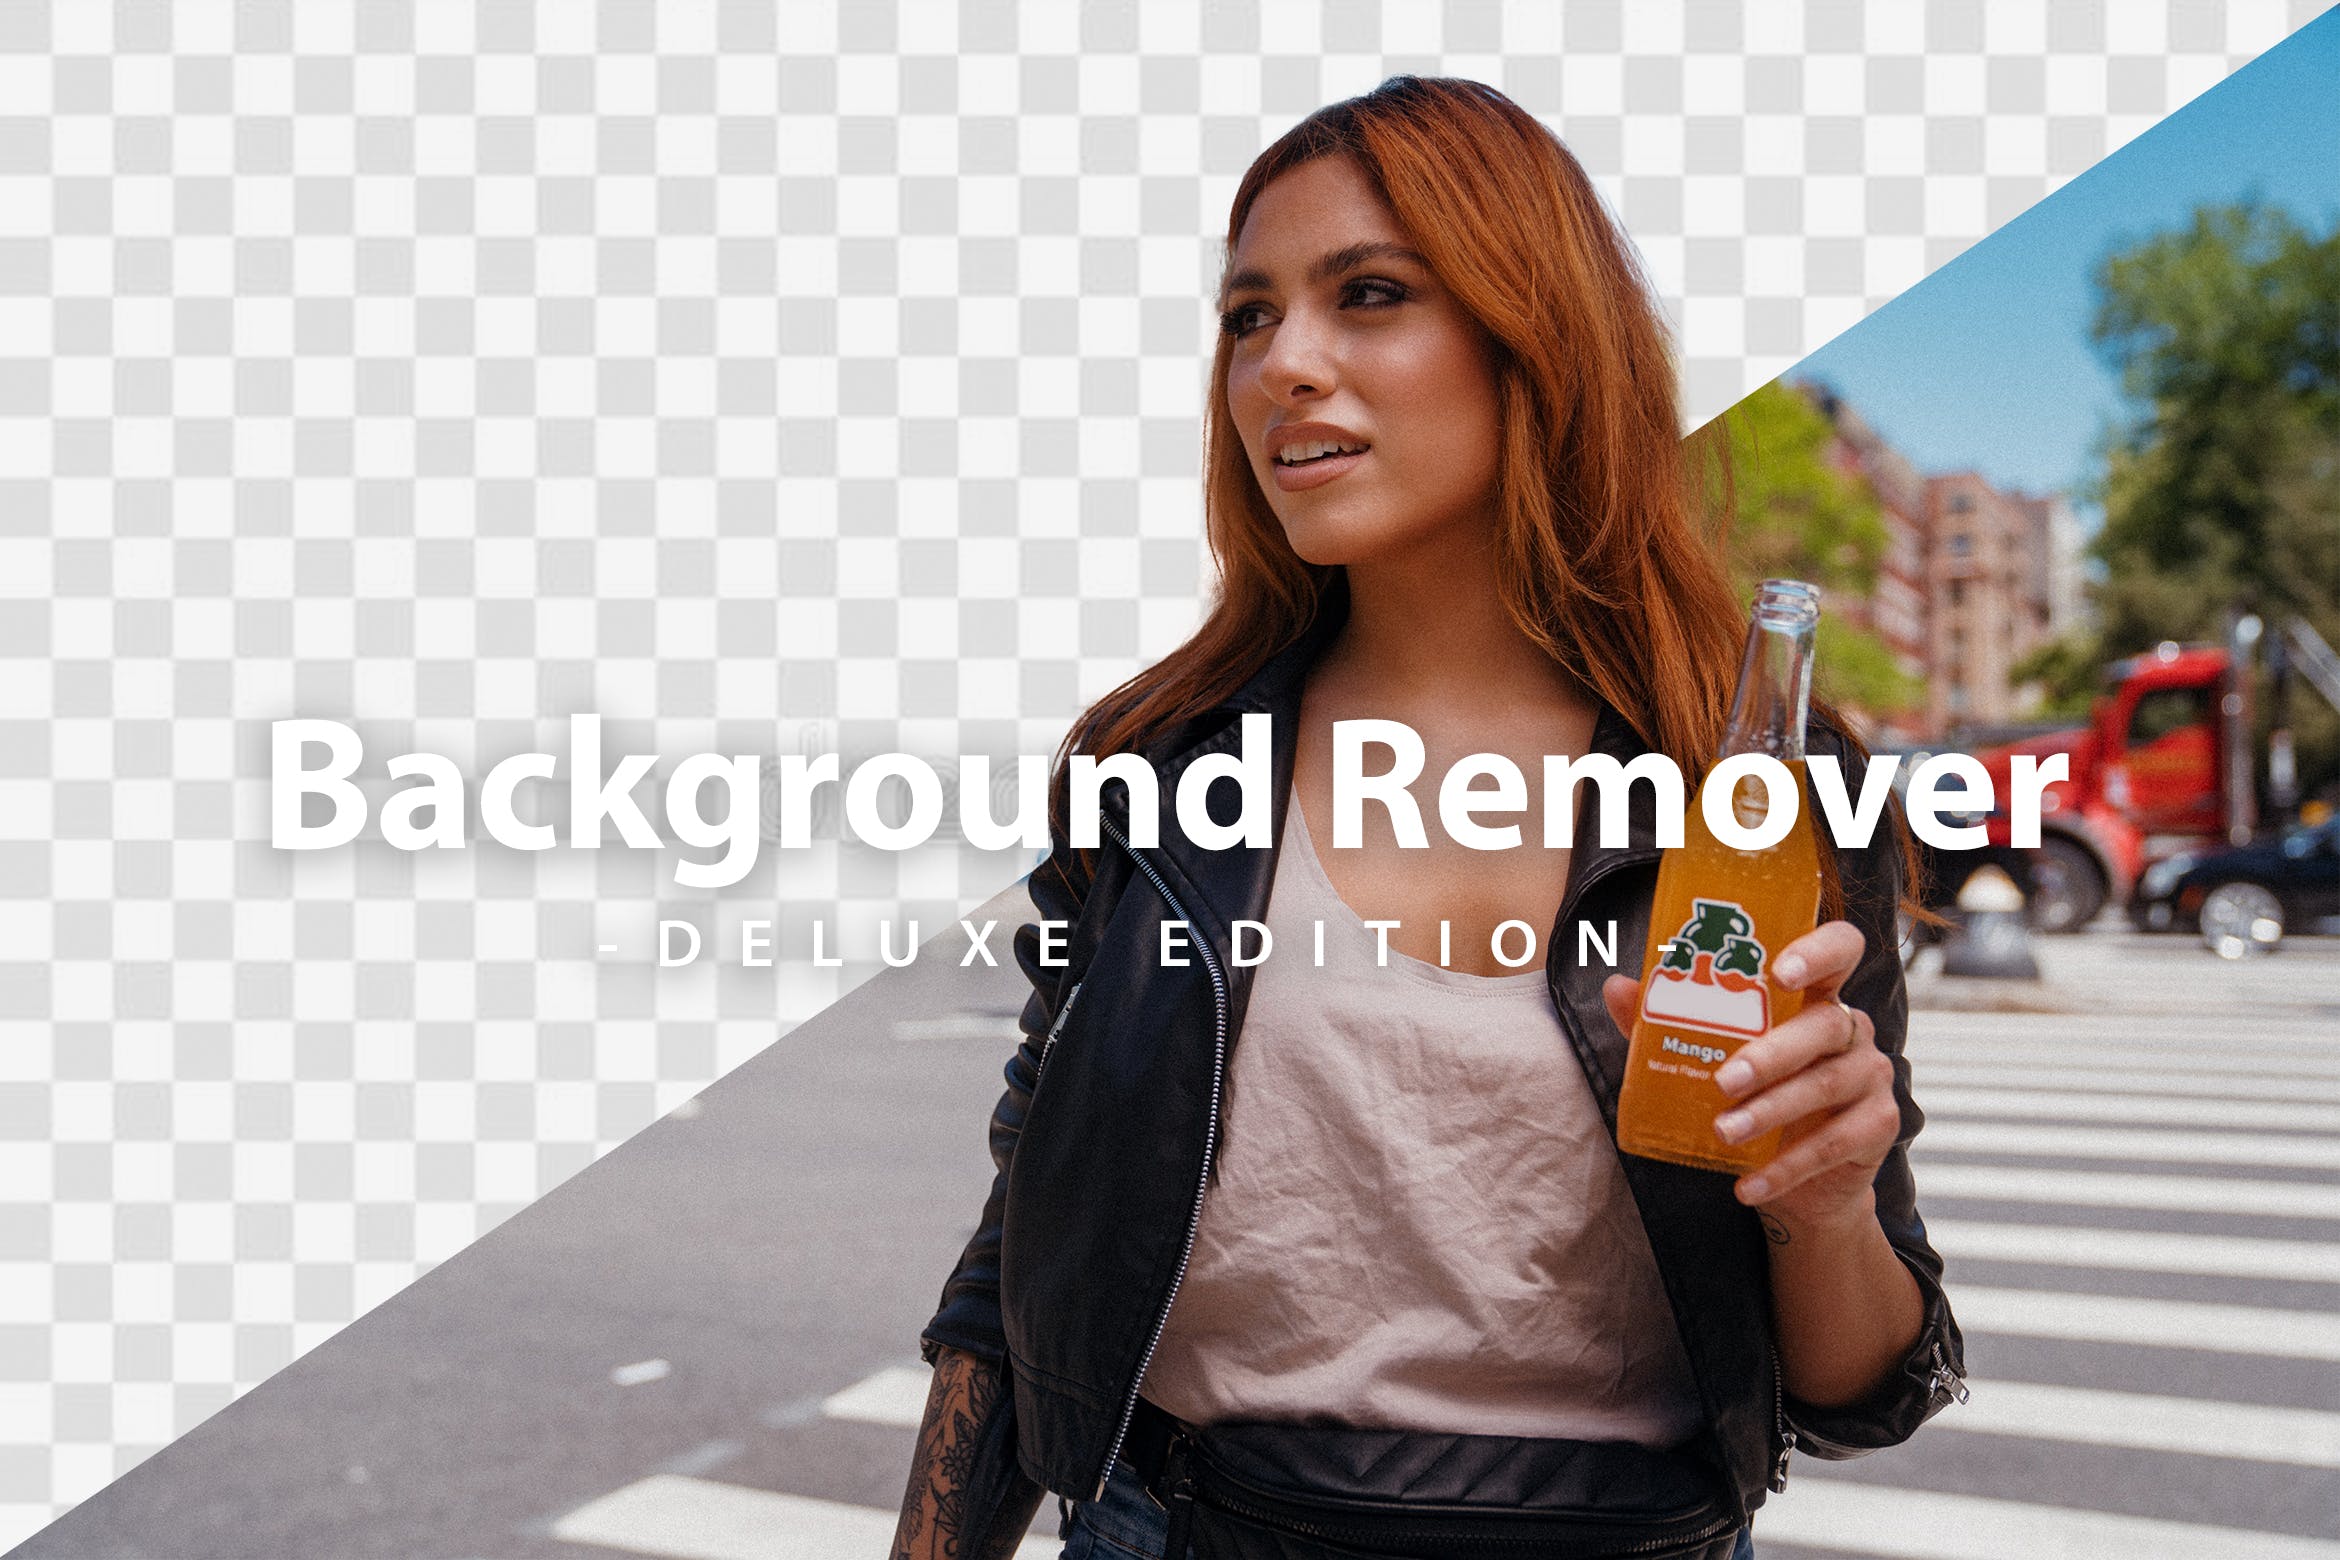 透明背景生成ps特效动作 Background Remover Action | Deluxe Edition 插件预设 第1张